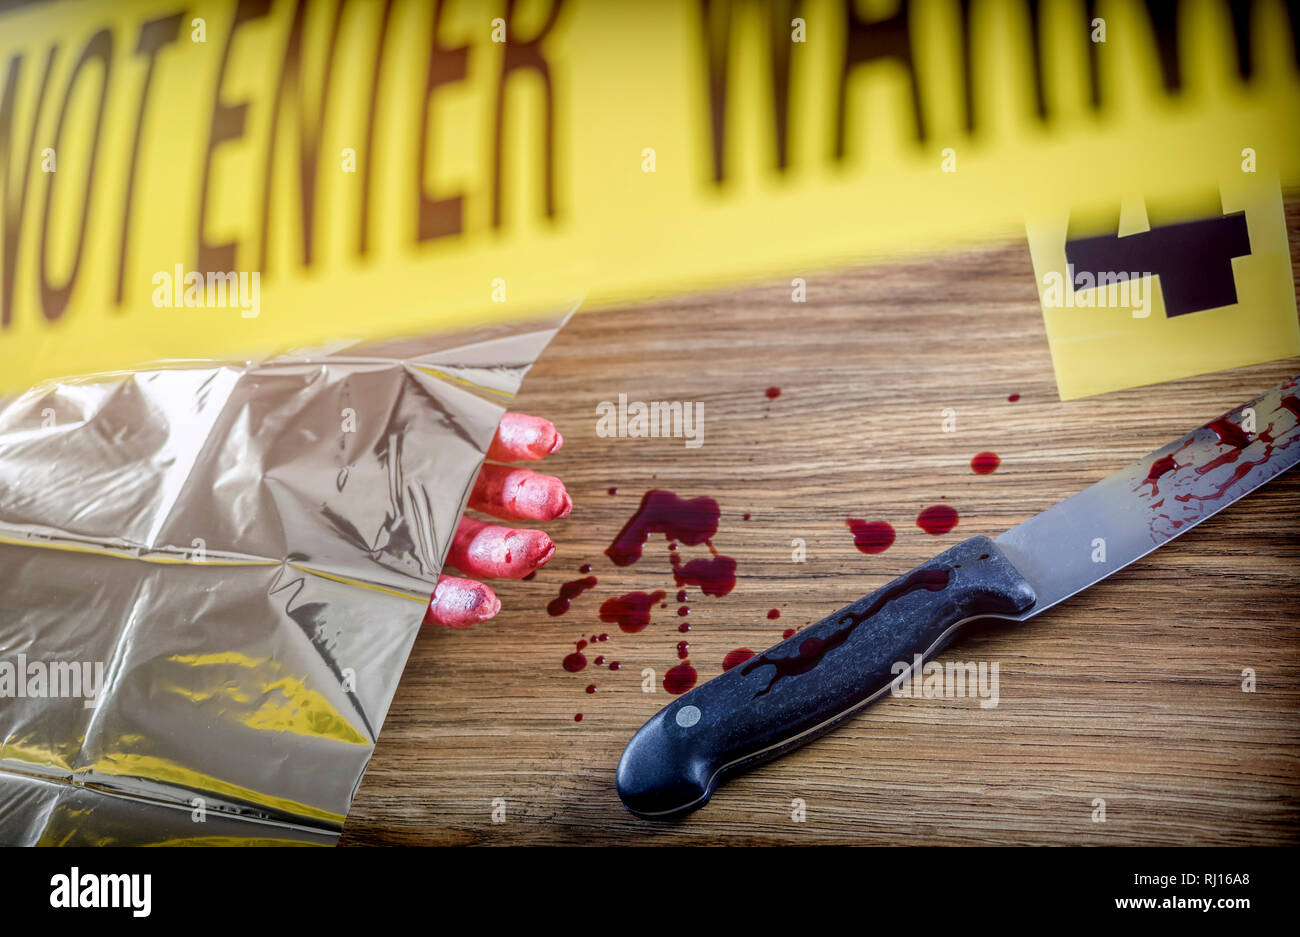 Mordszene für das Schneiden von Waffe, blutige Hand zusammen mit einem Messer mit Blut, konzeptionelle Bild Stockfoto